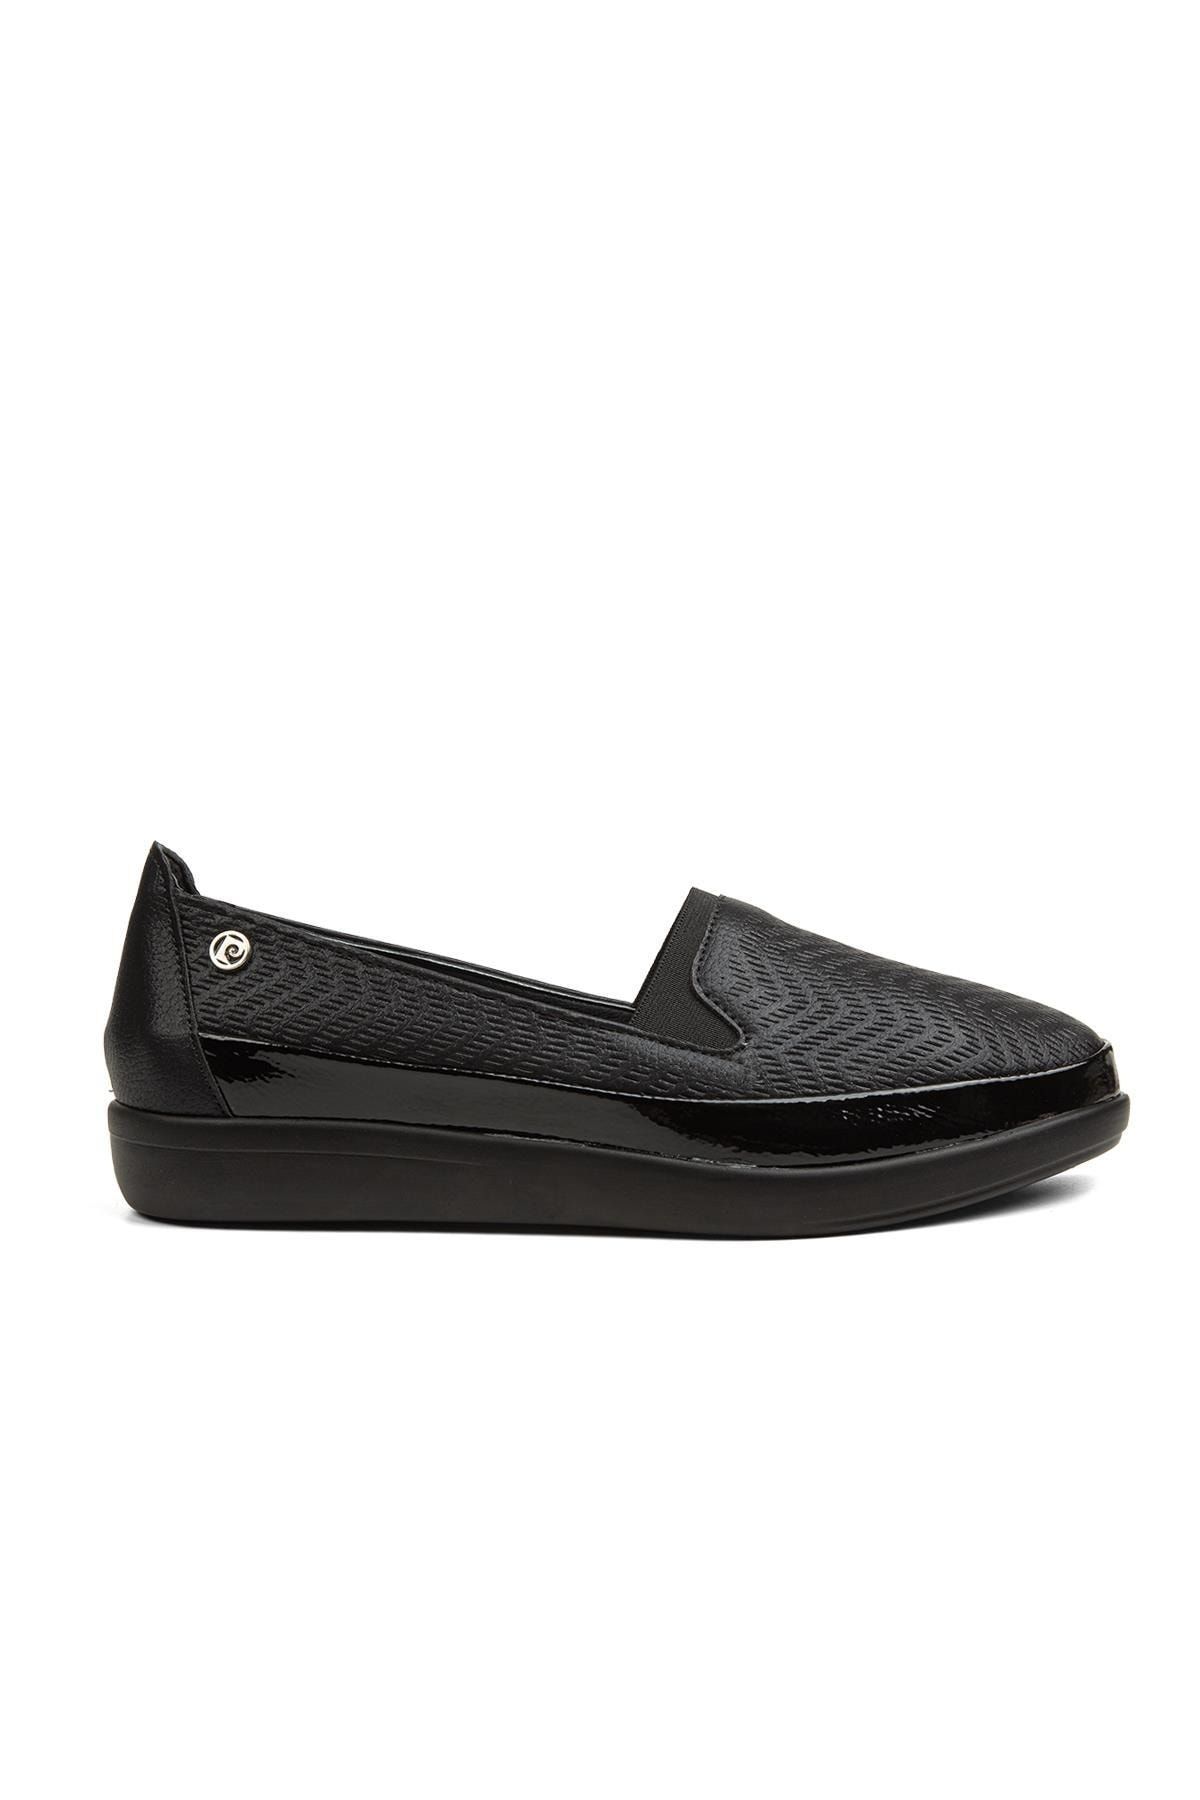 Pierre Cardin ® | Pc-52243-3441 Siyah Parlak - Kadın Günlük Ayakkabı